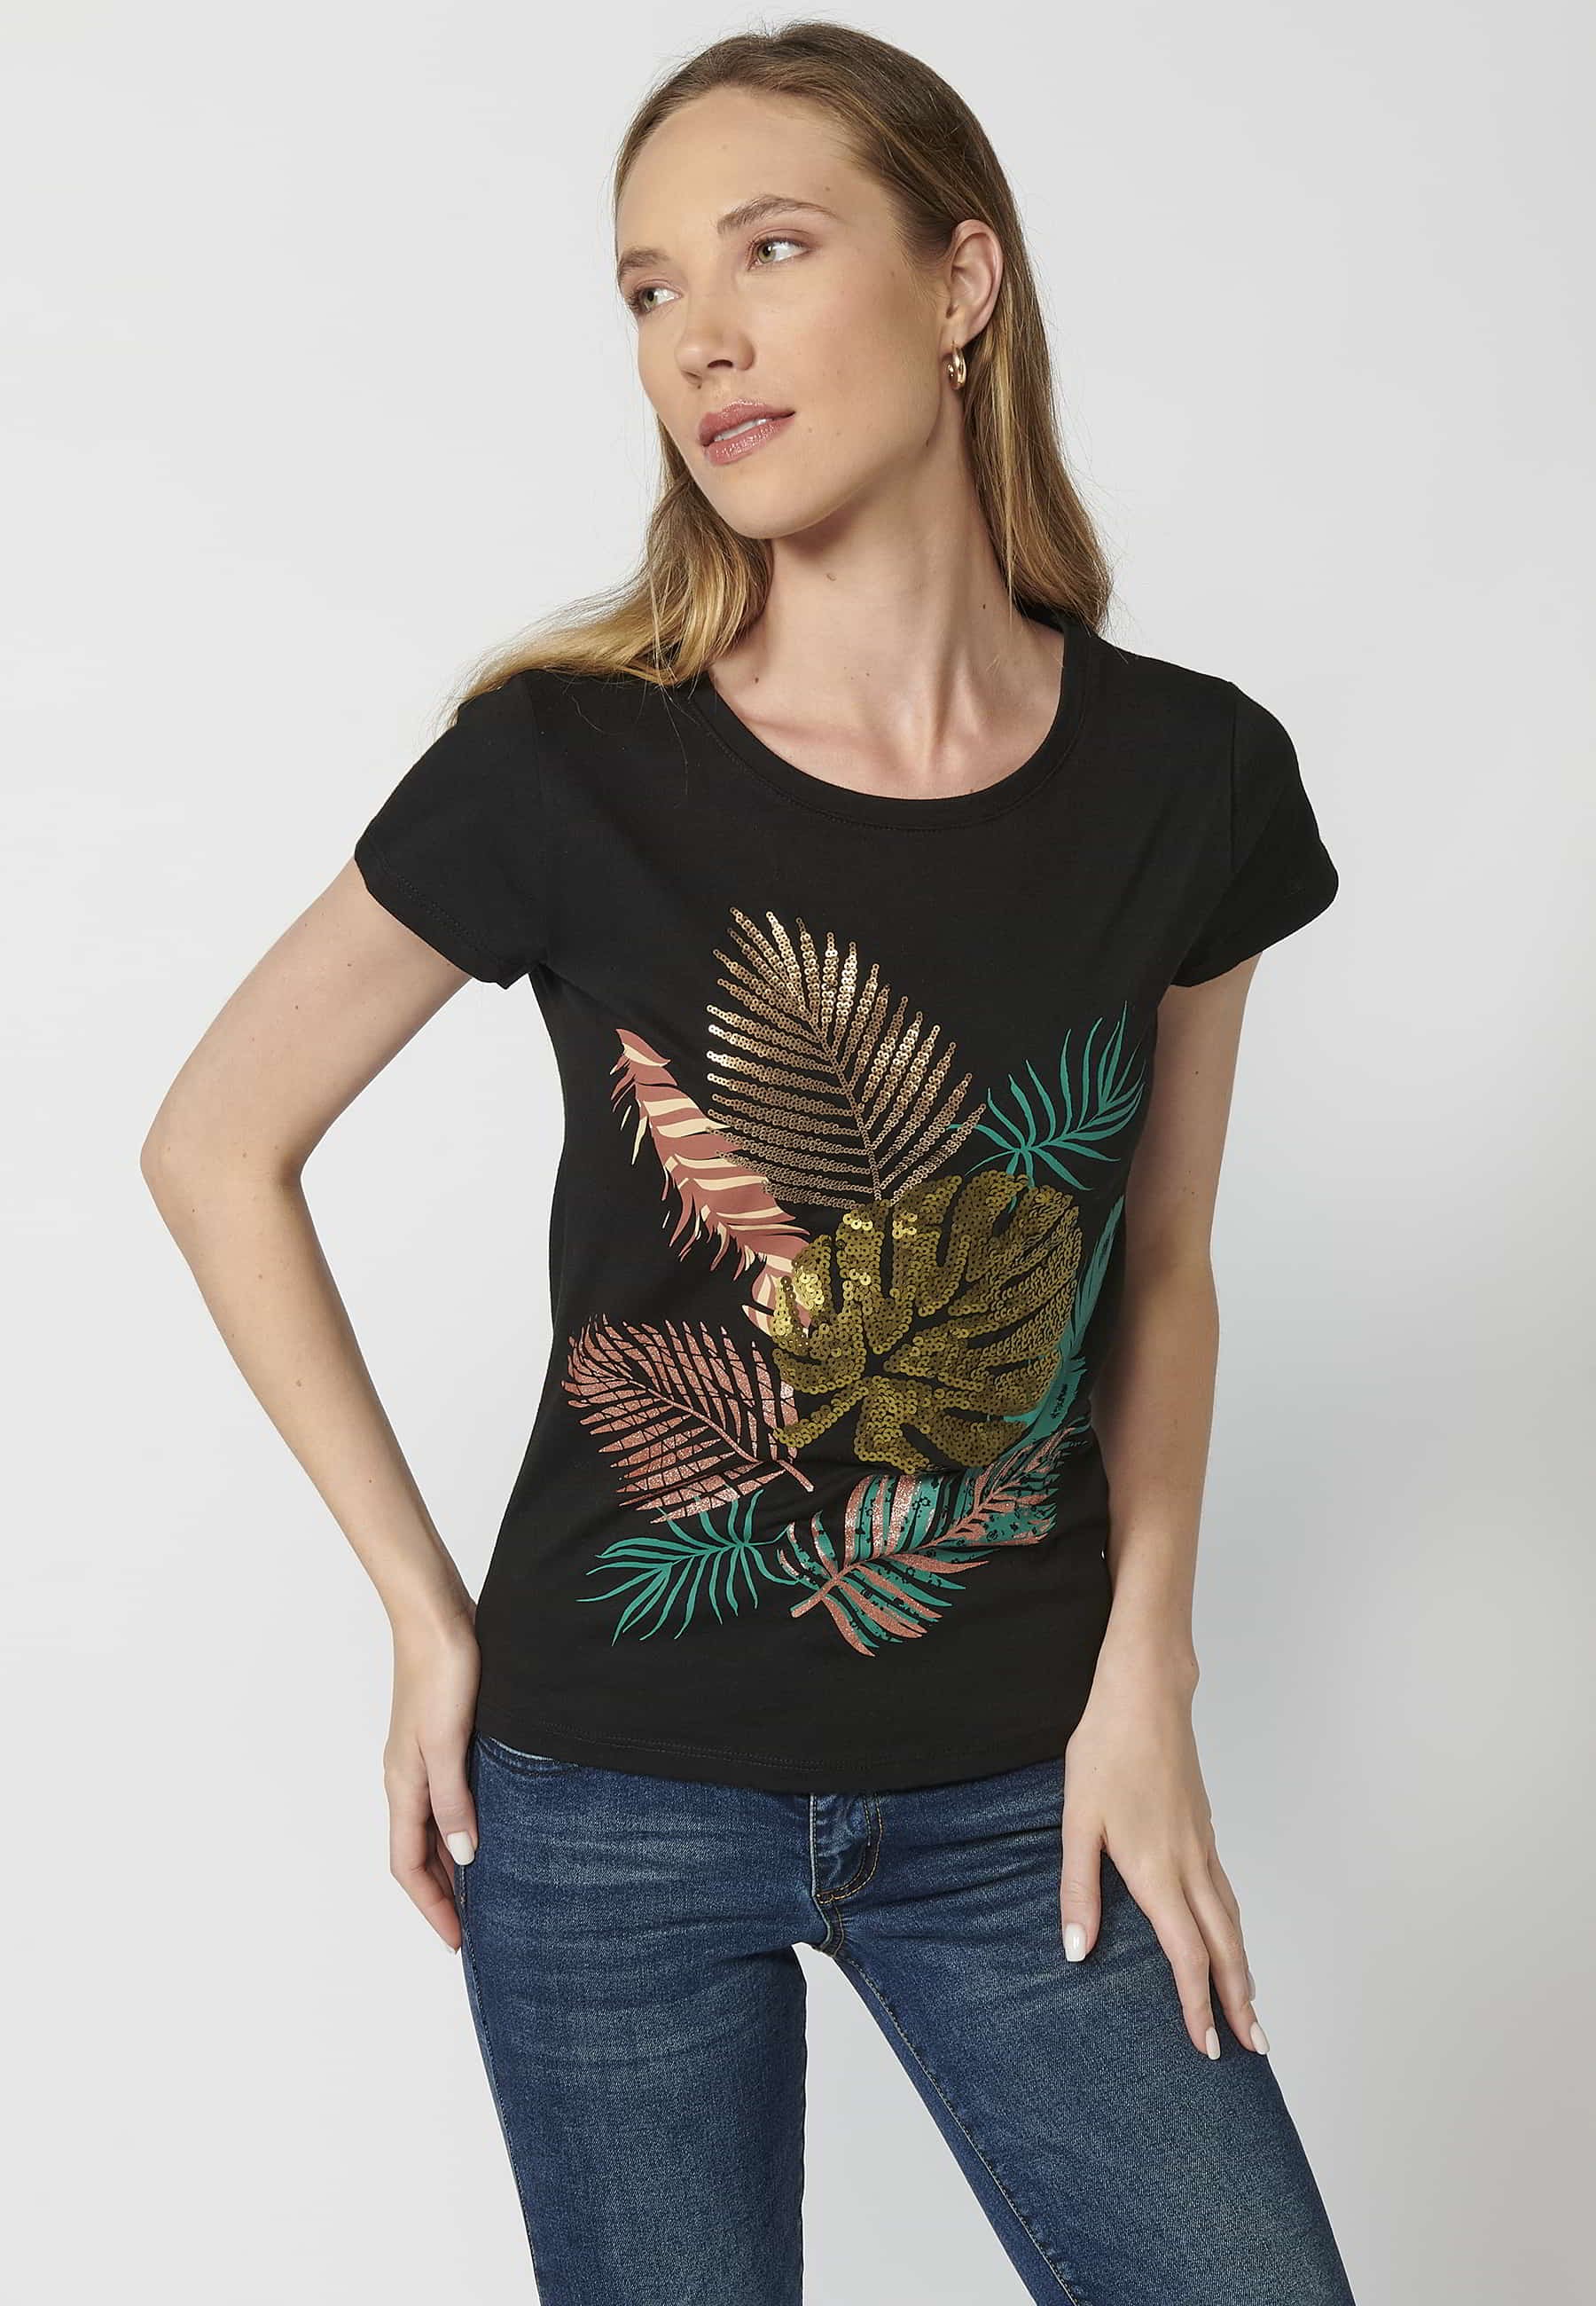 Camiseta de manga corta de algodón cuello redondo estampado frontal hojas color negro para mujer